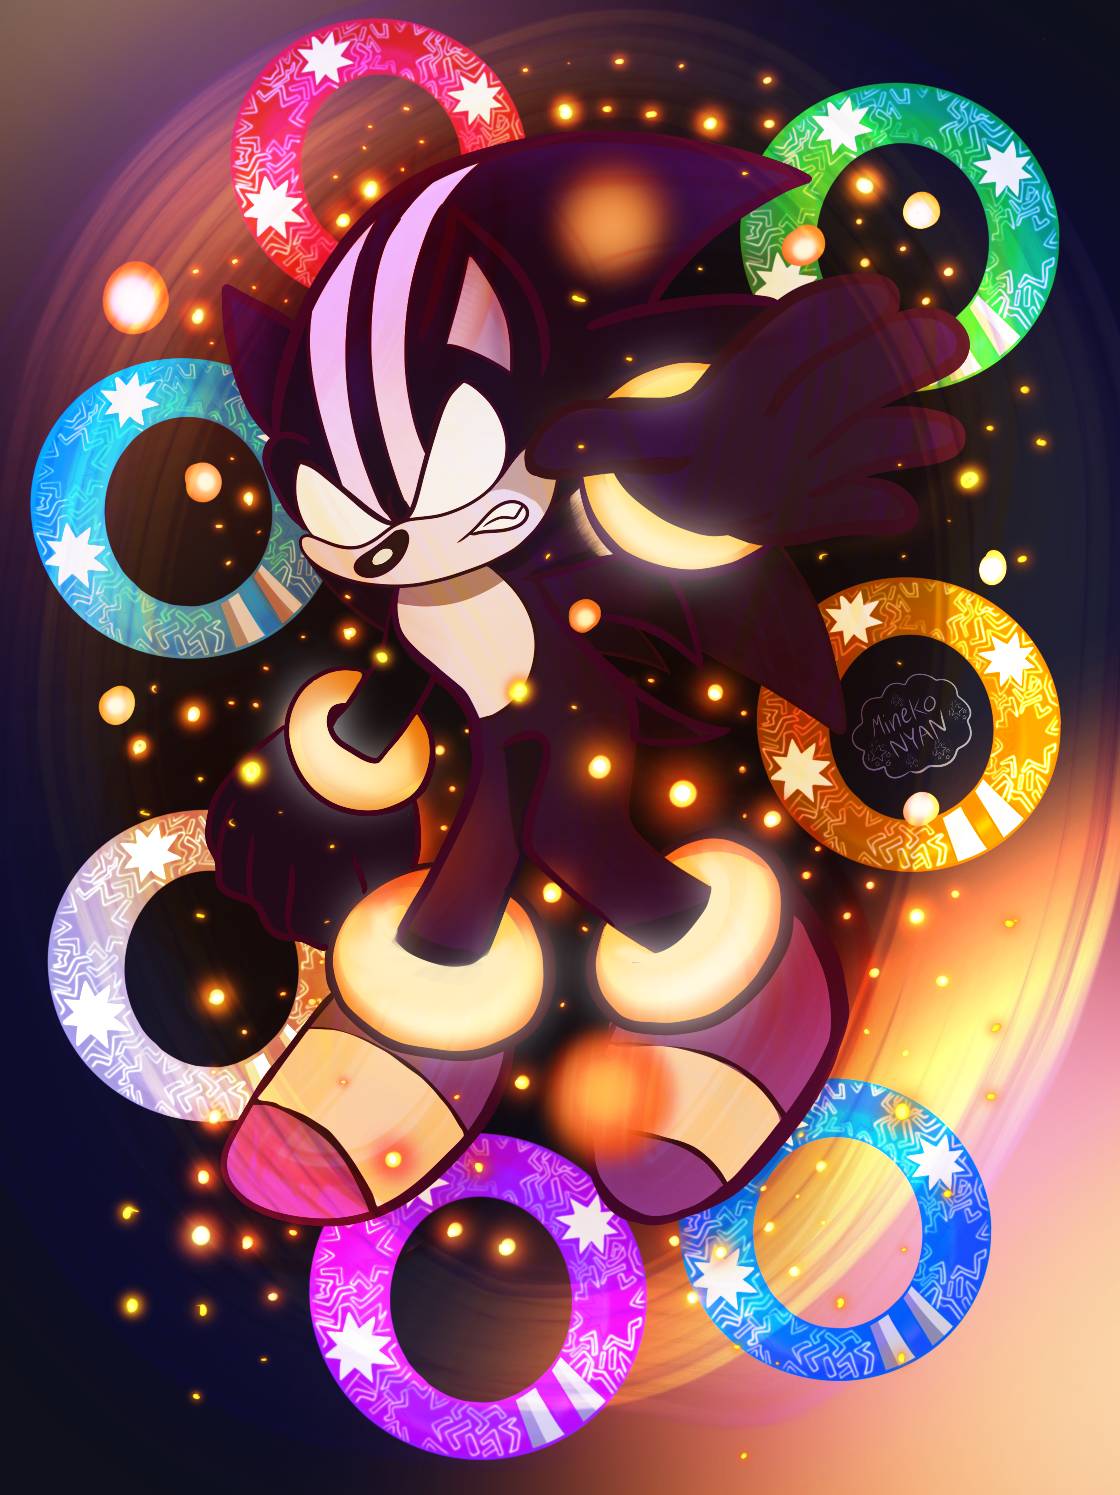 Darkspine Sonic by MutationFoxy on DeviantArt